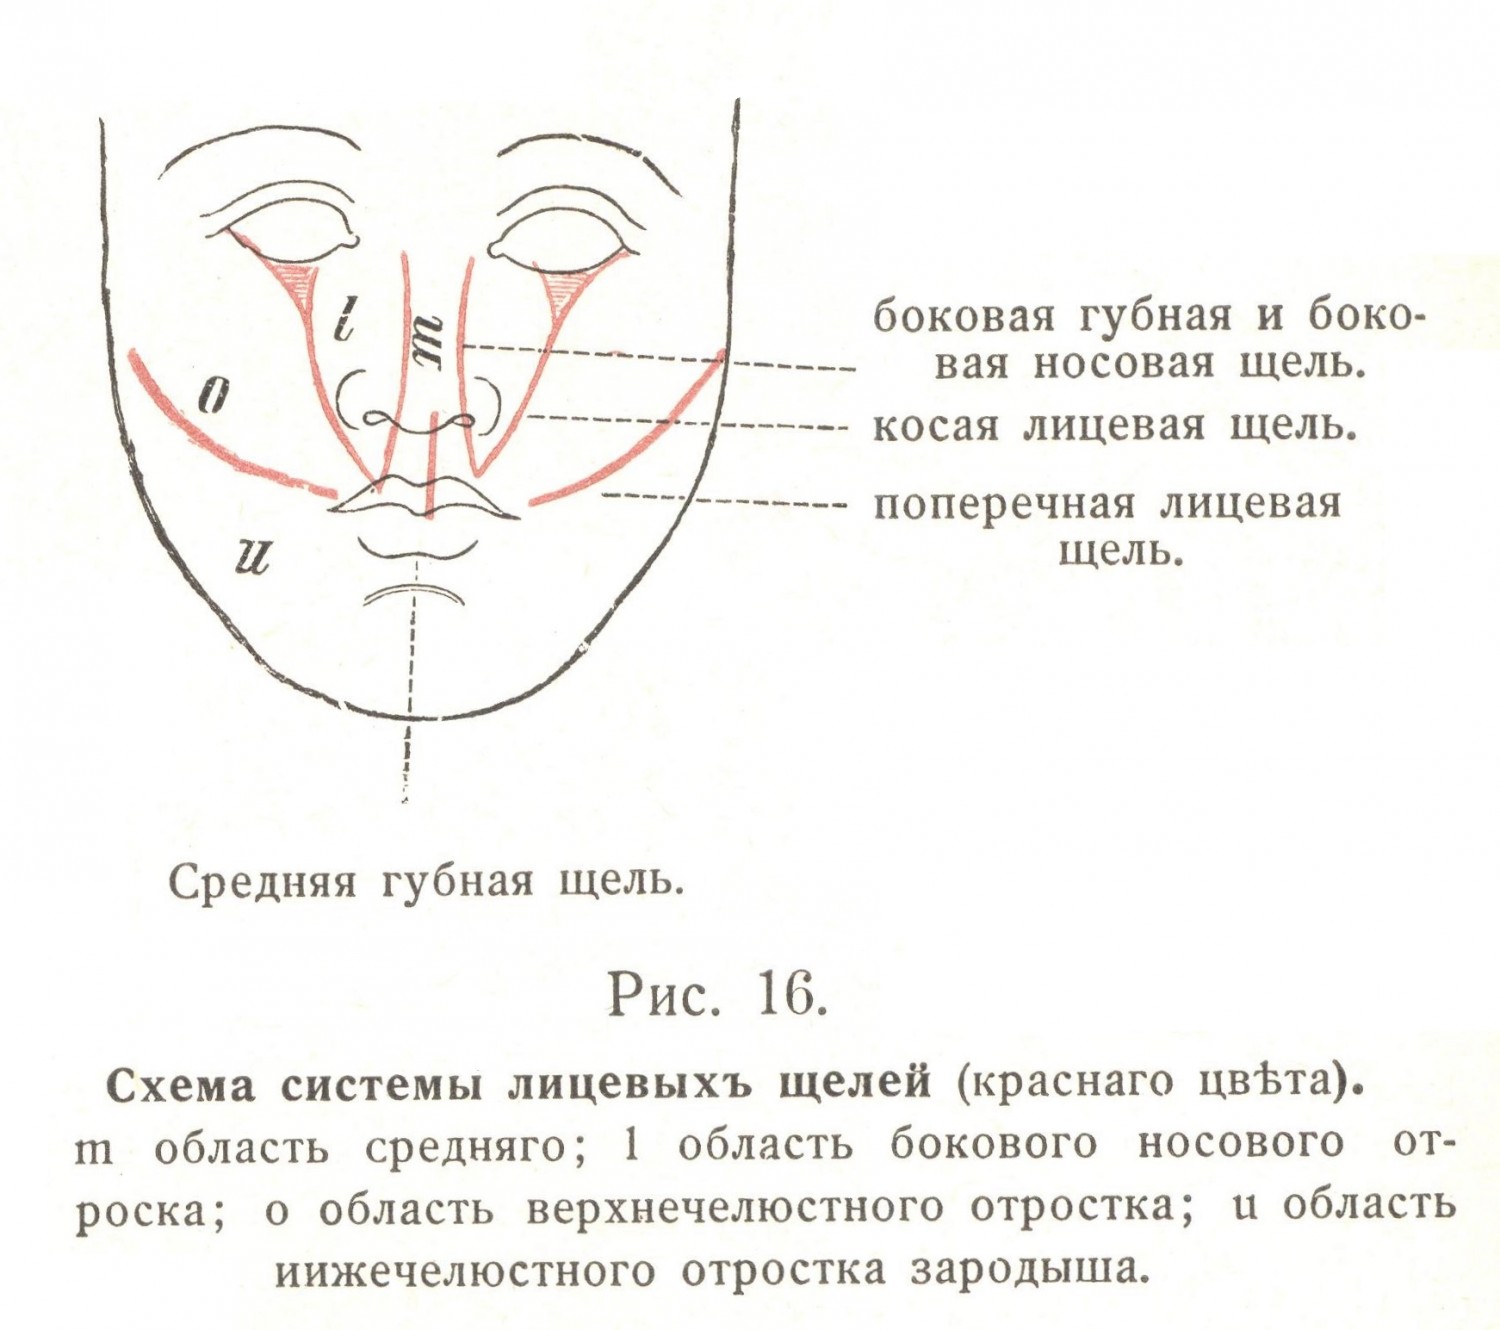 Схема системы лицевых щелей